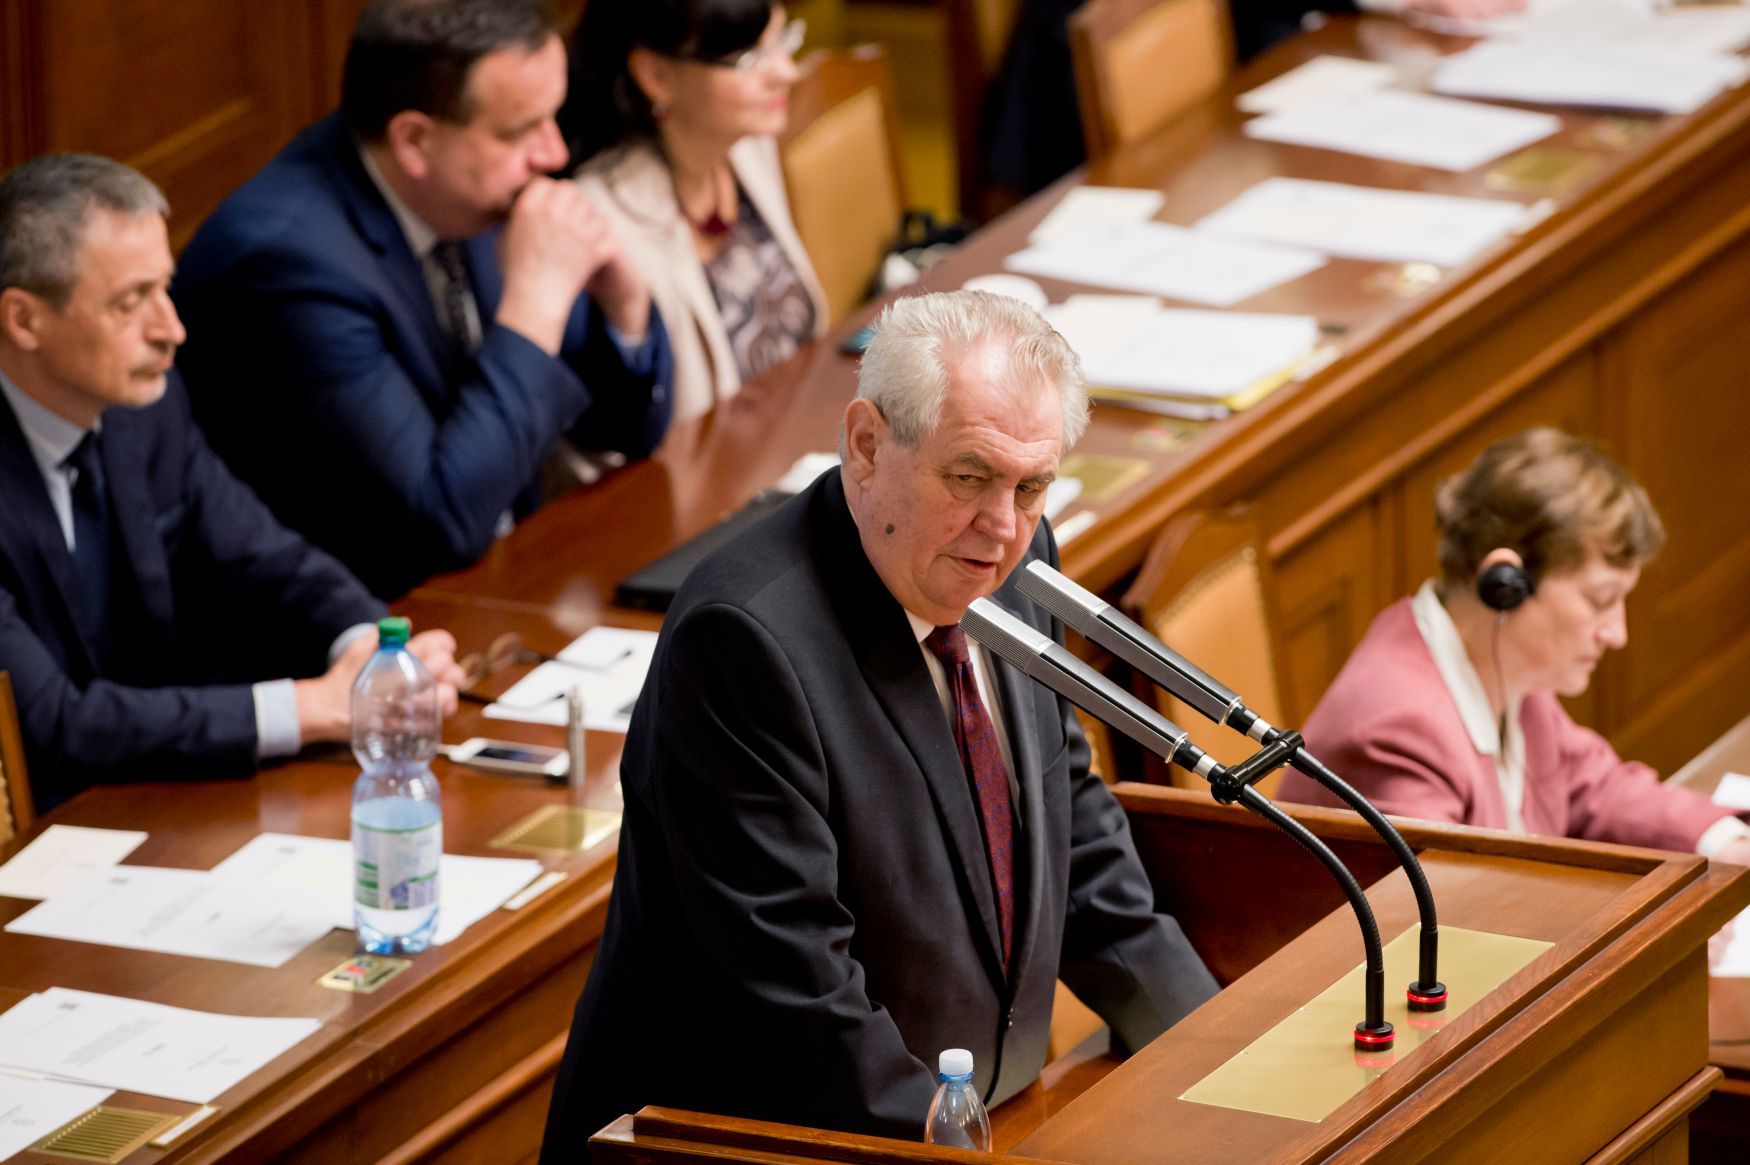 Miloš Zeman ve Sněmovně